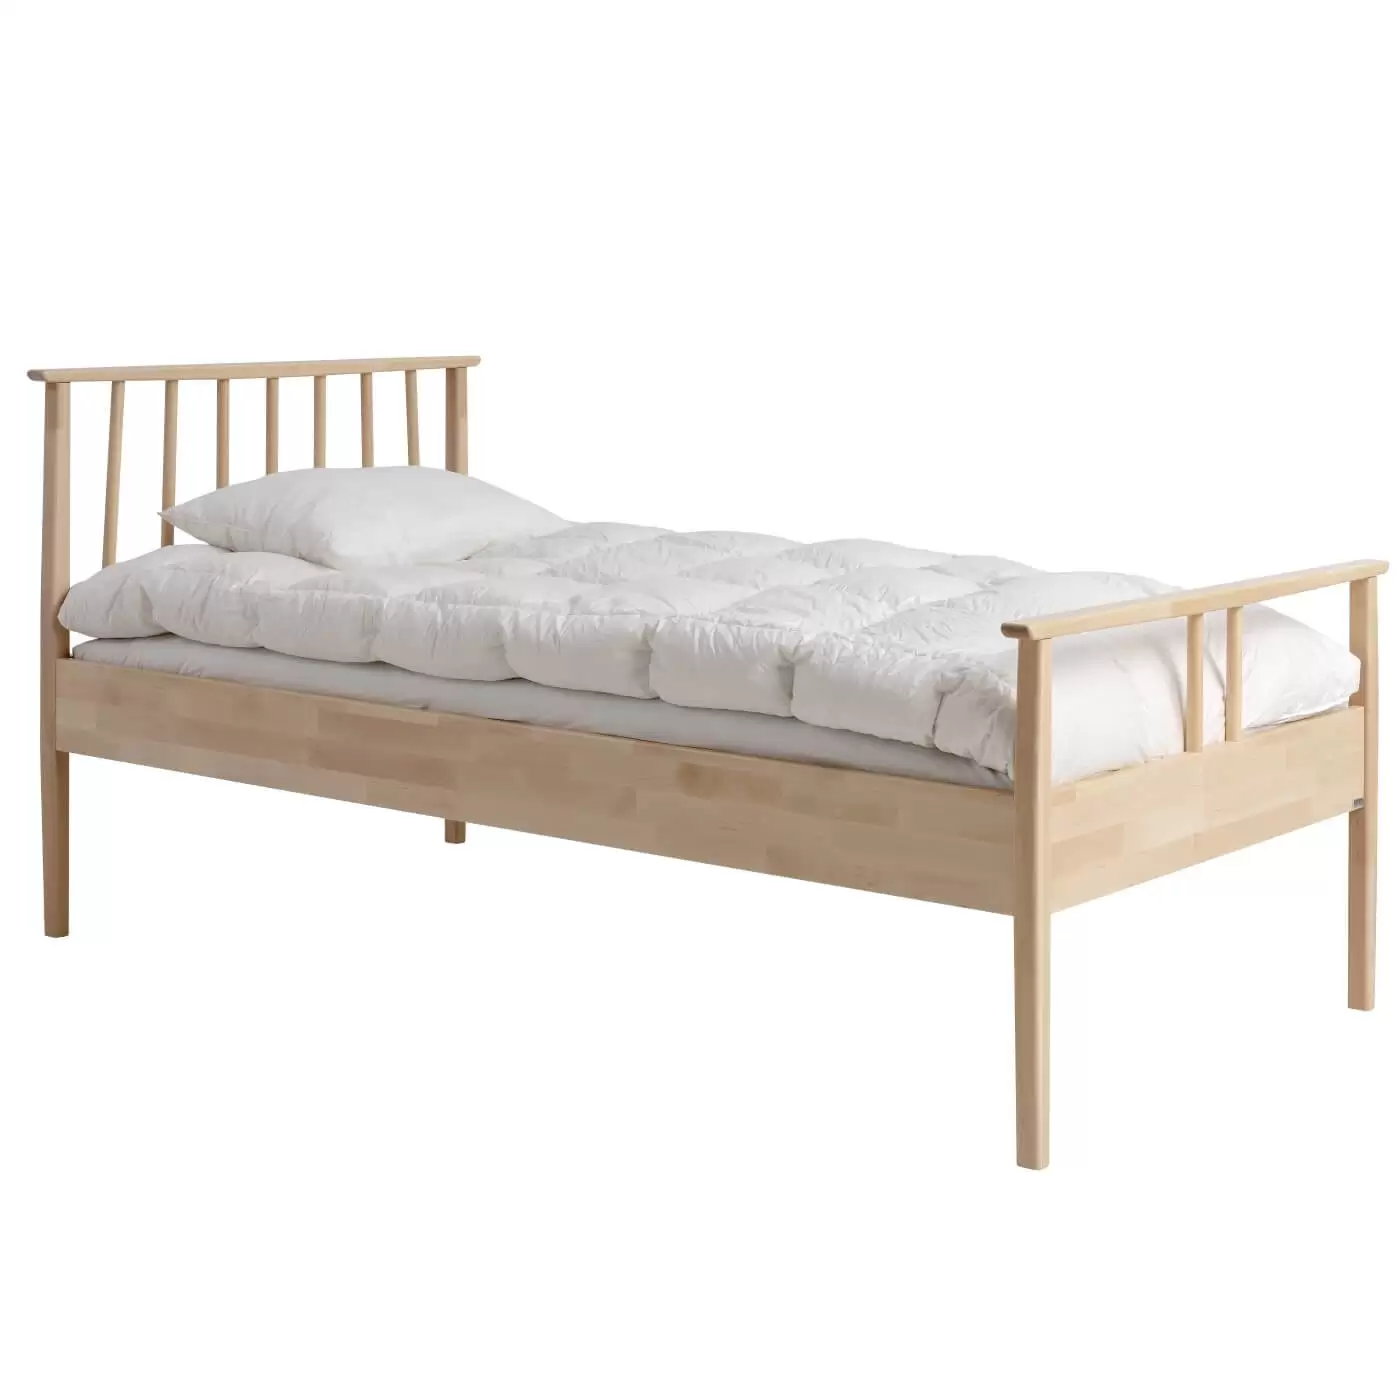 Łóżko drewniane 90x200 NOEL. Widoczne w całości wysokie drewniane łóżko z materacem, białą kołdrą z poduszką. Nowoczesny skandynawski design